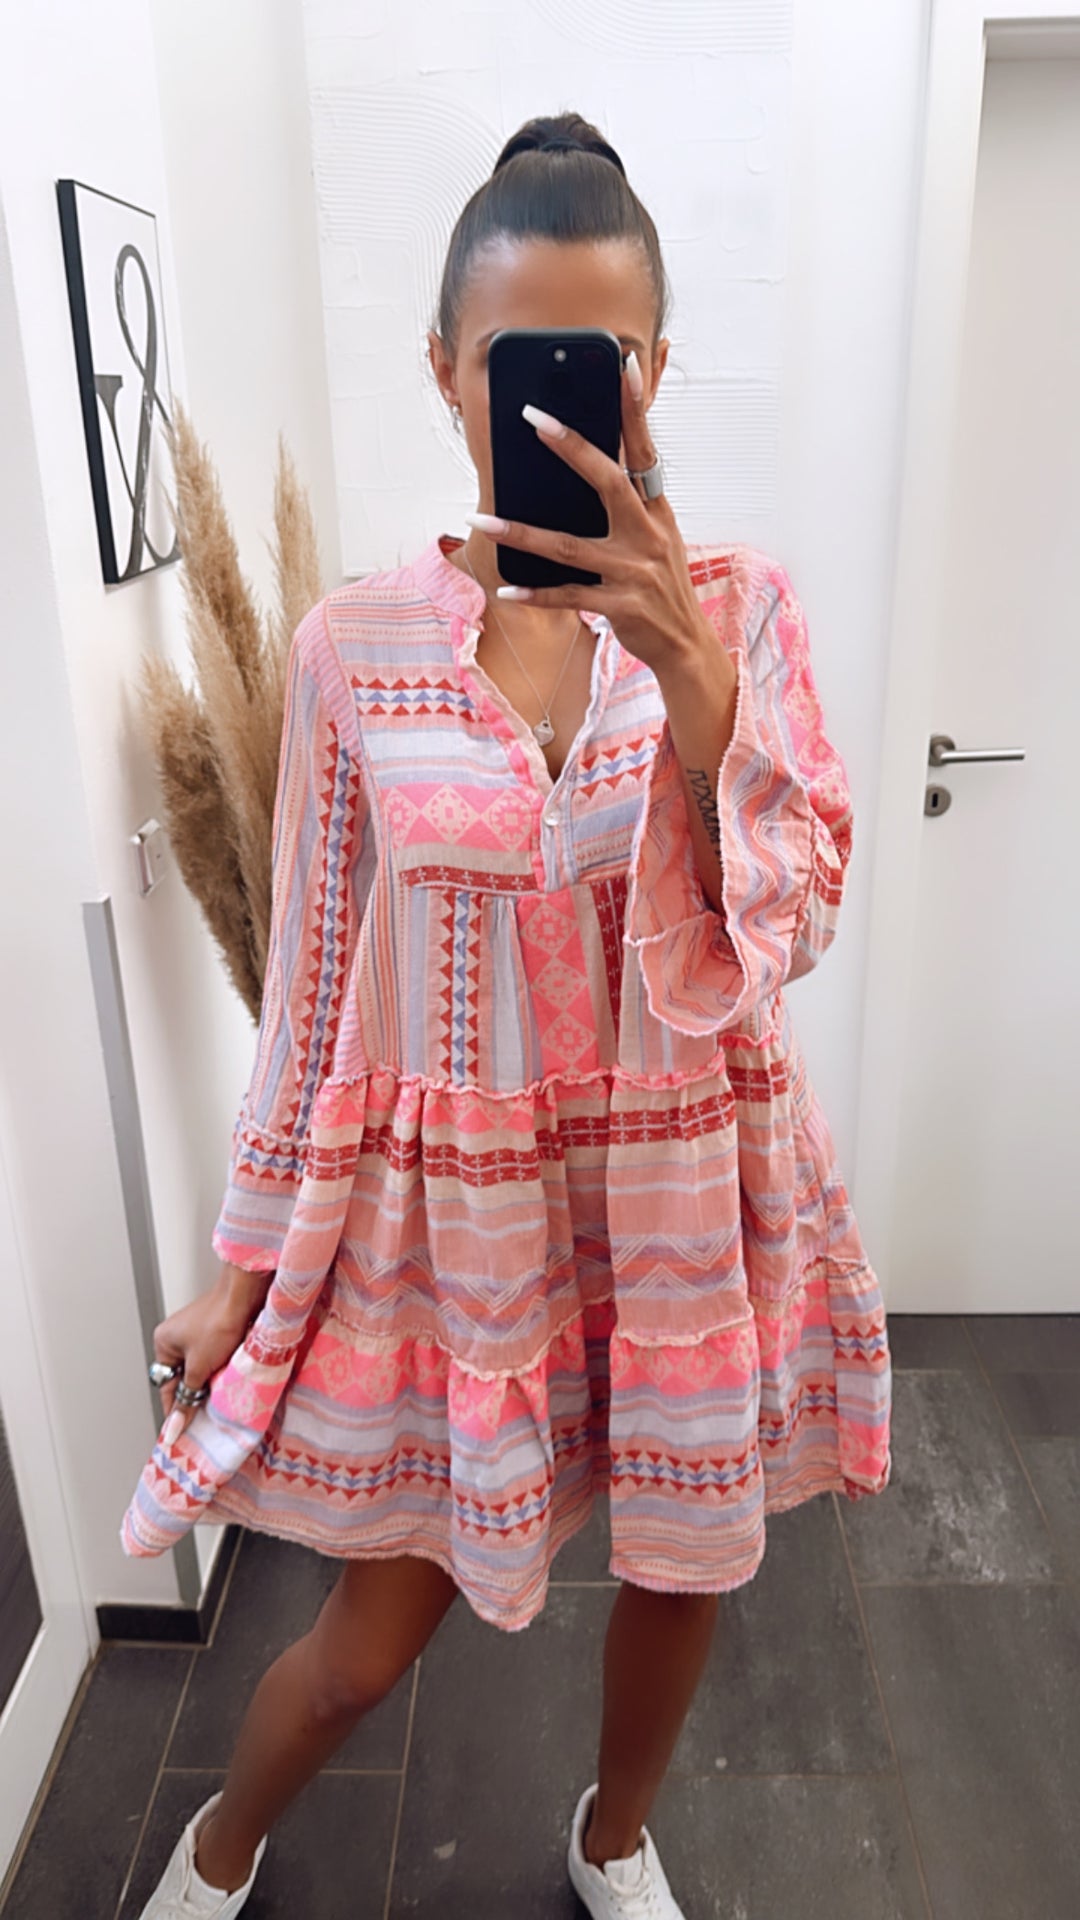 Tunika / Kleid in sommerlichem Muster und Farben / pink Töne  Art. 5906